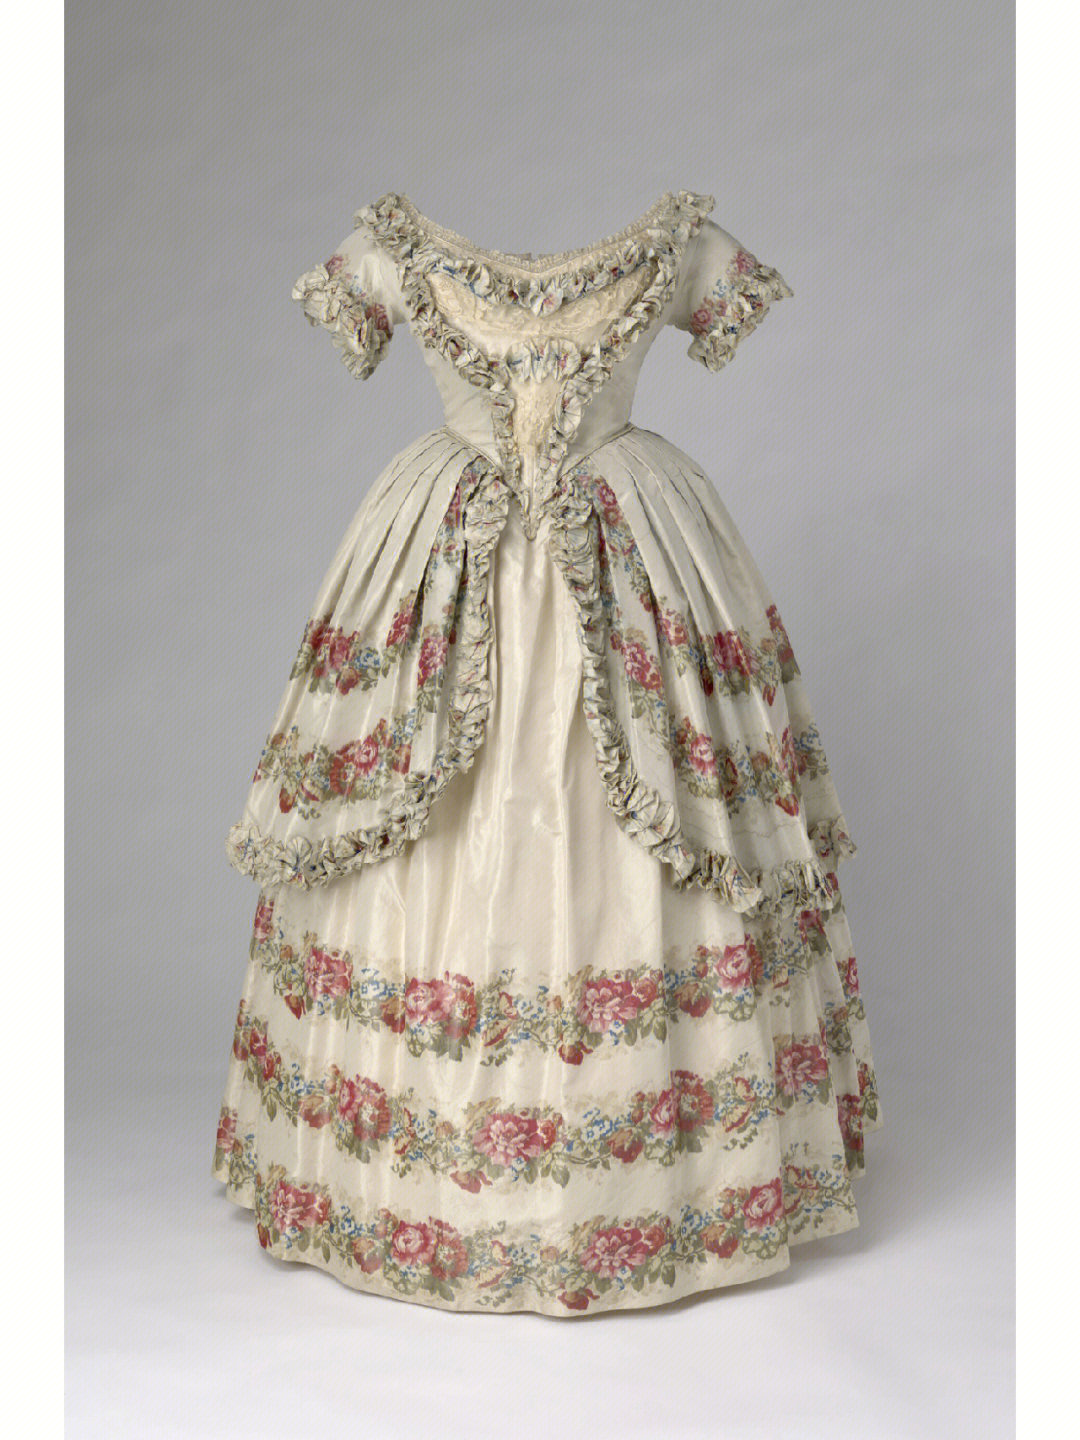 维多利亚女王的晚礼服,1851年